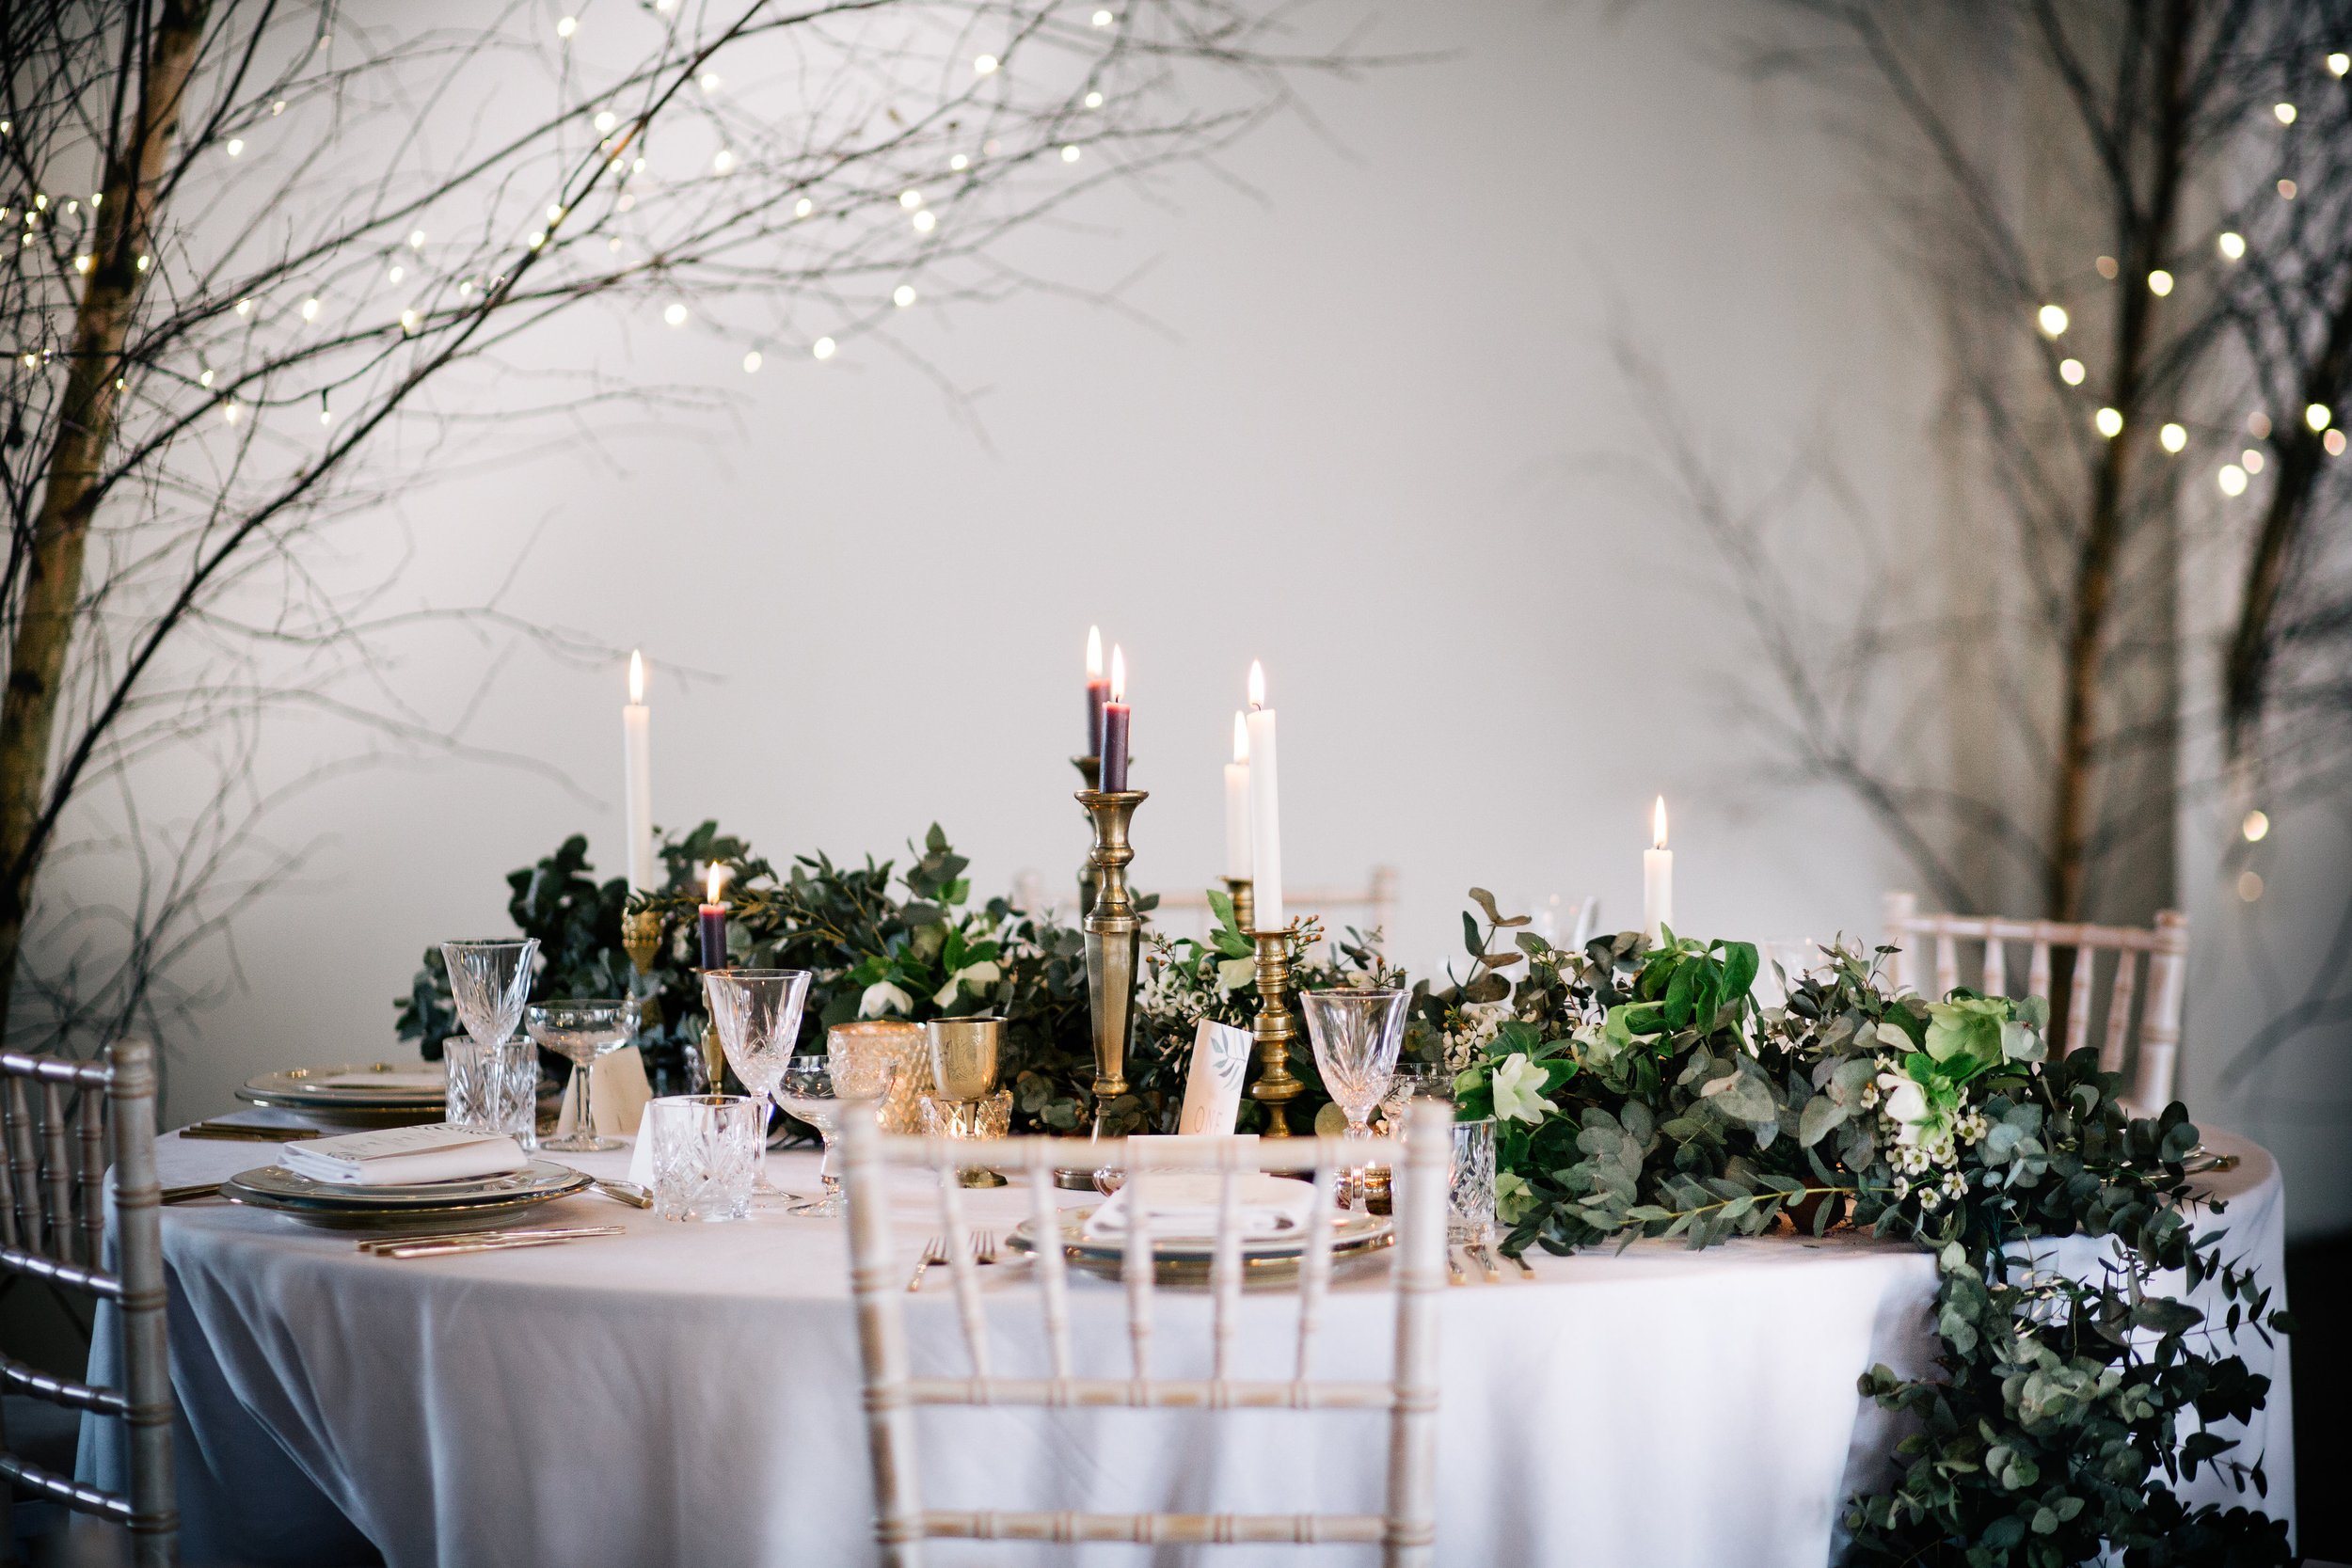 Botanical wedding &amp; greenery wedding decor